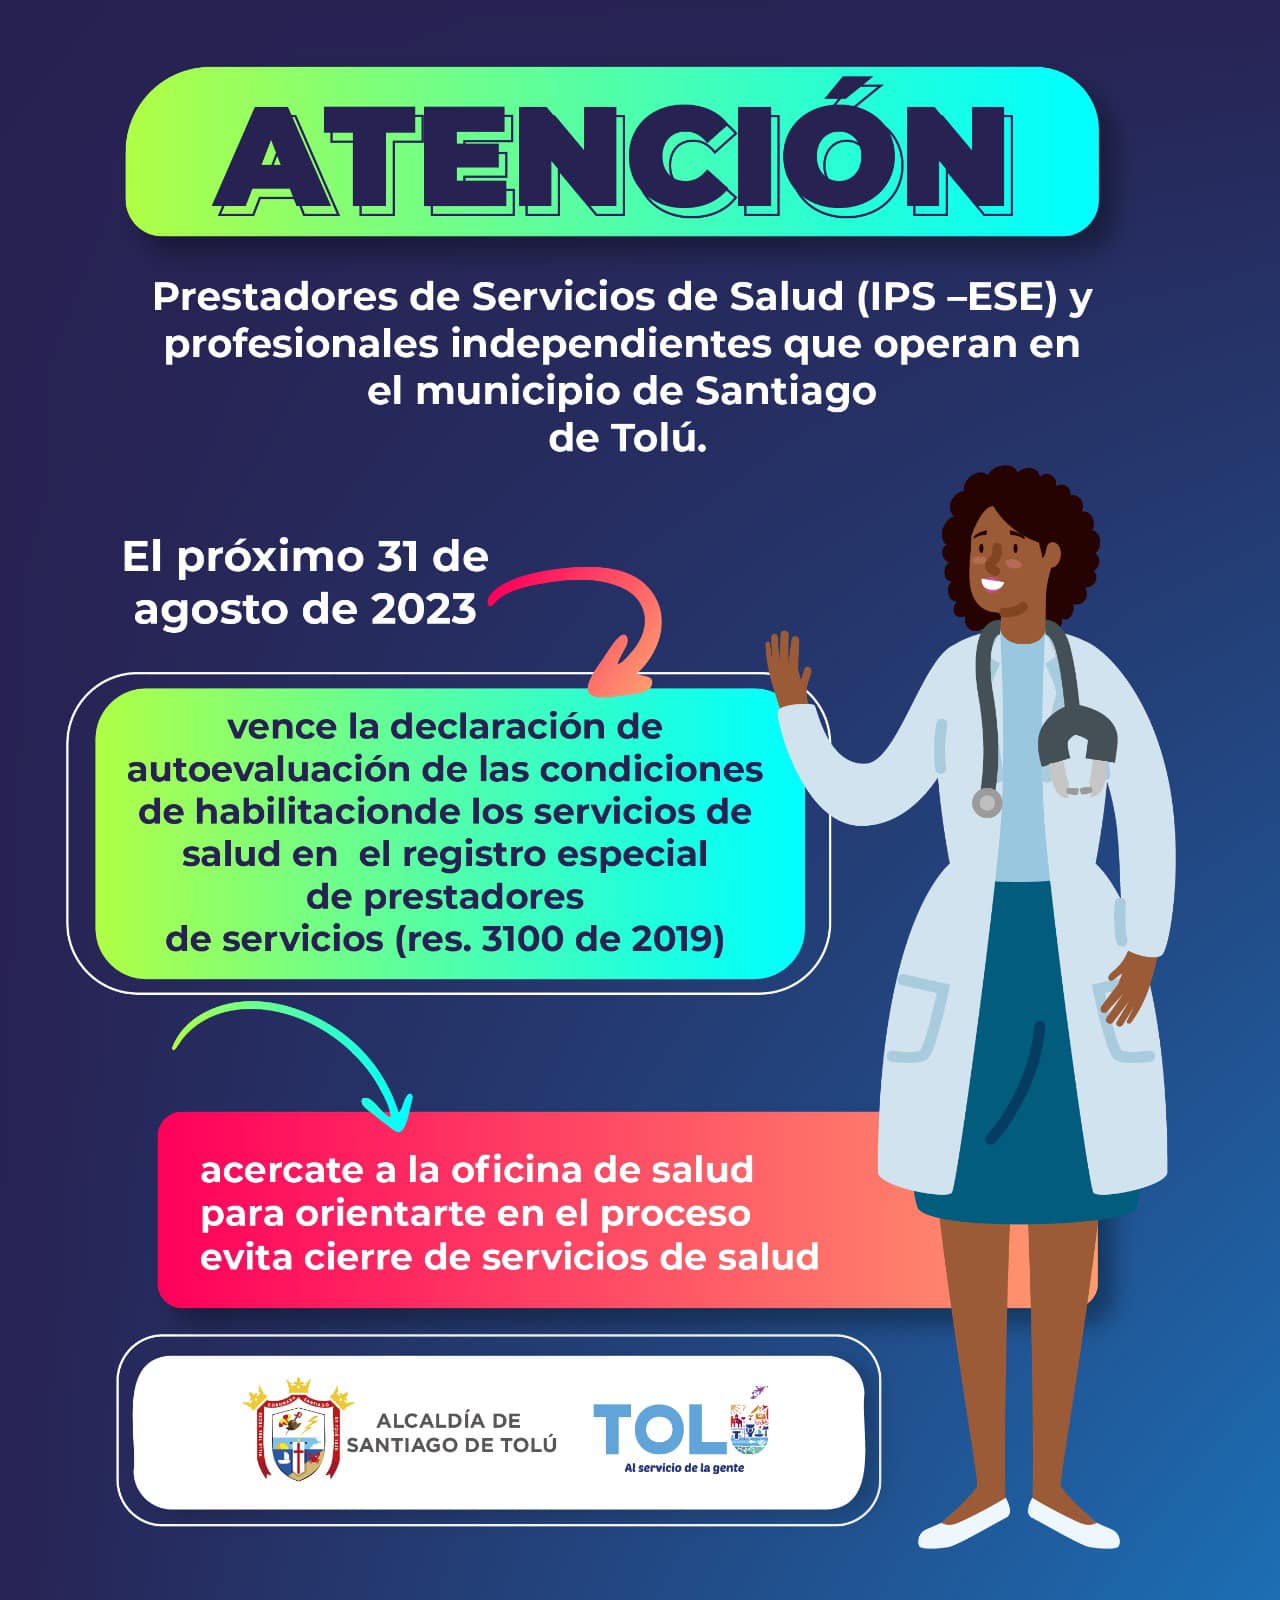  ¡Atención Prestadores de Servicios de Salud en Santiago de Tolú!